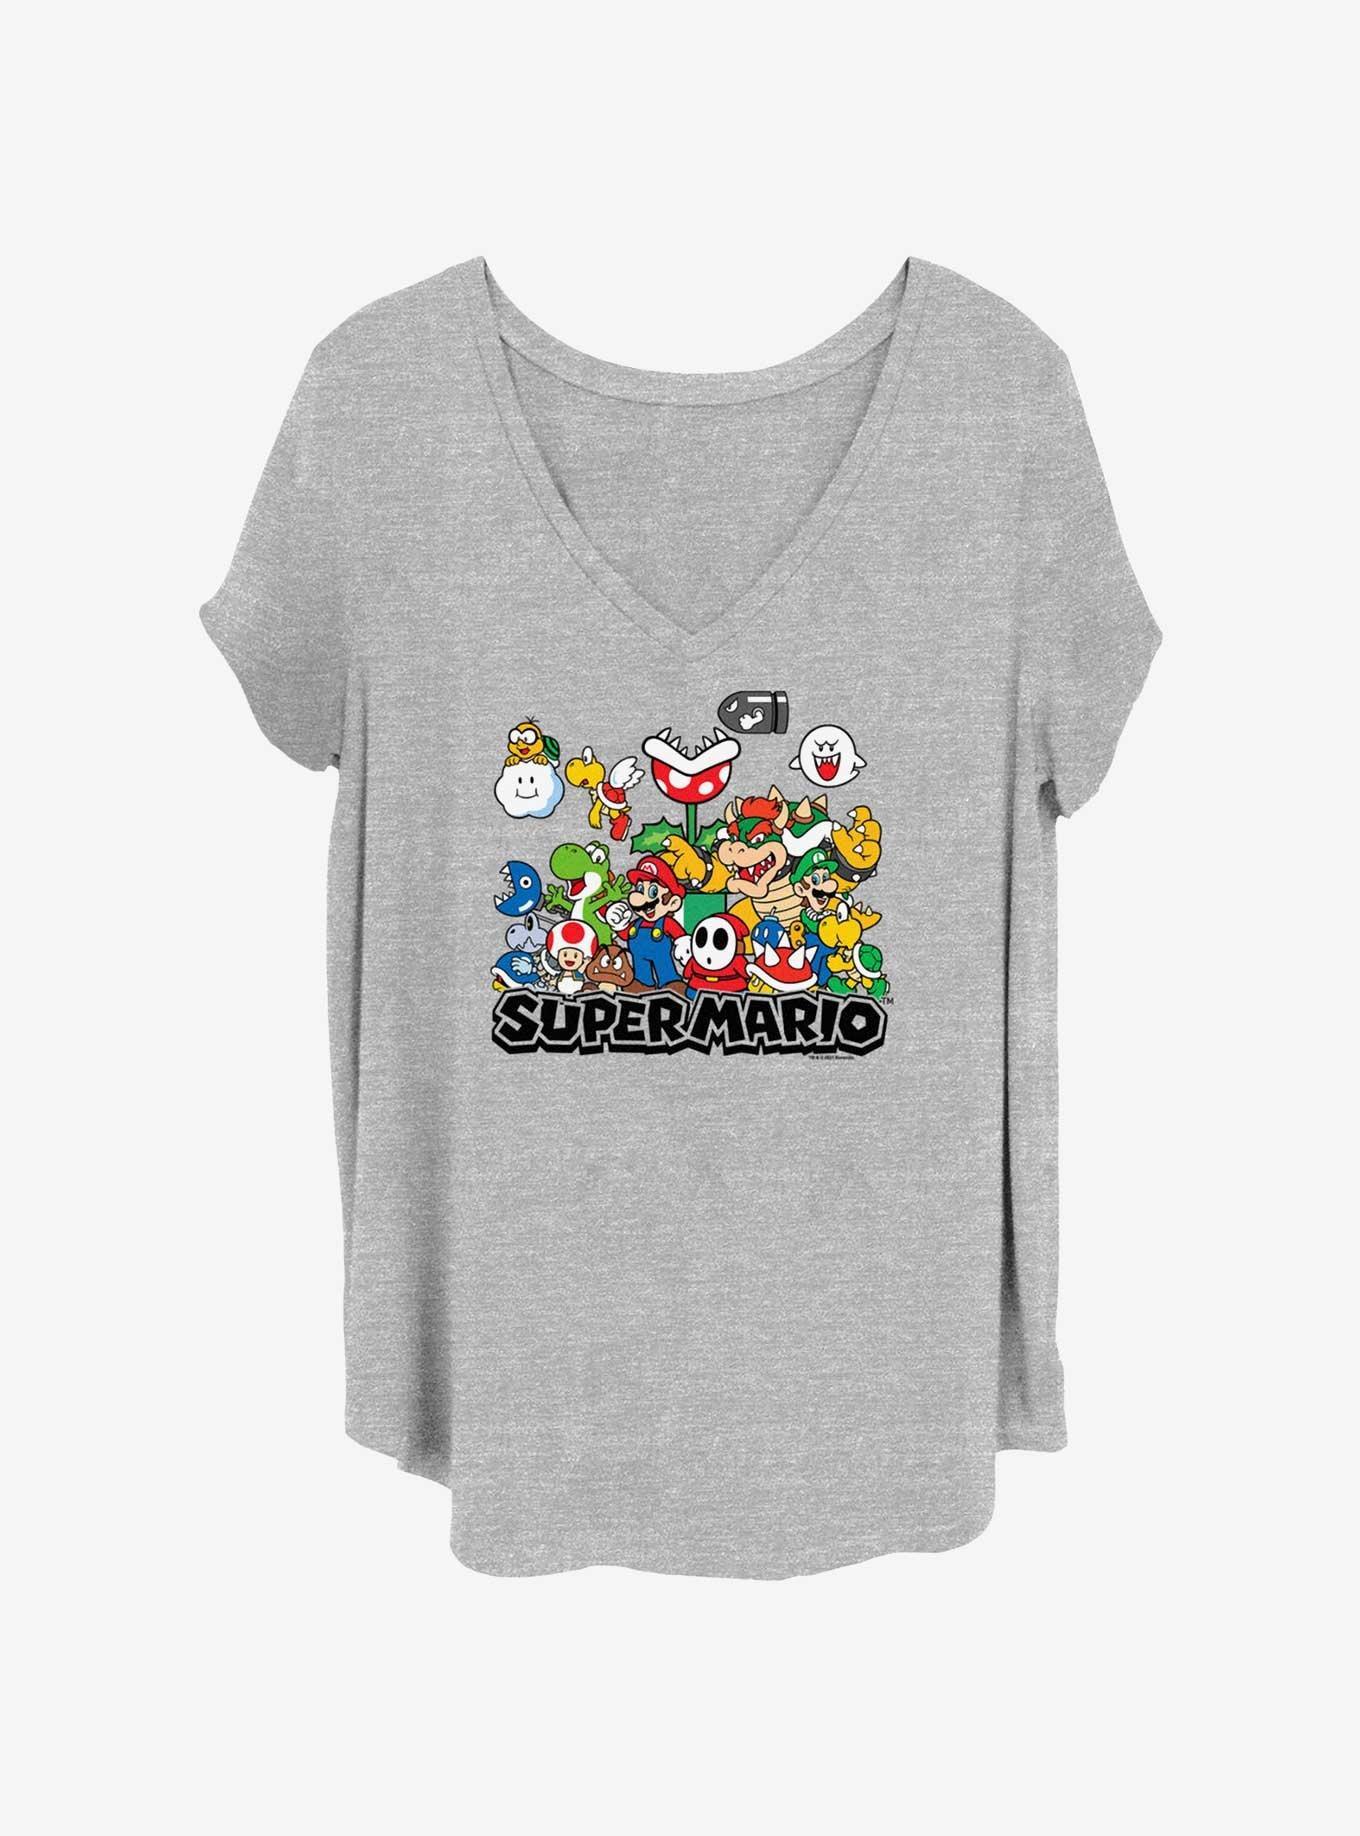 Nintendo Kingdom Kids Girls T-Shirt Plus